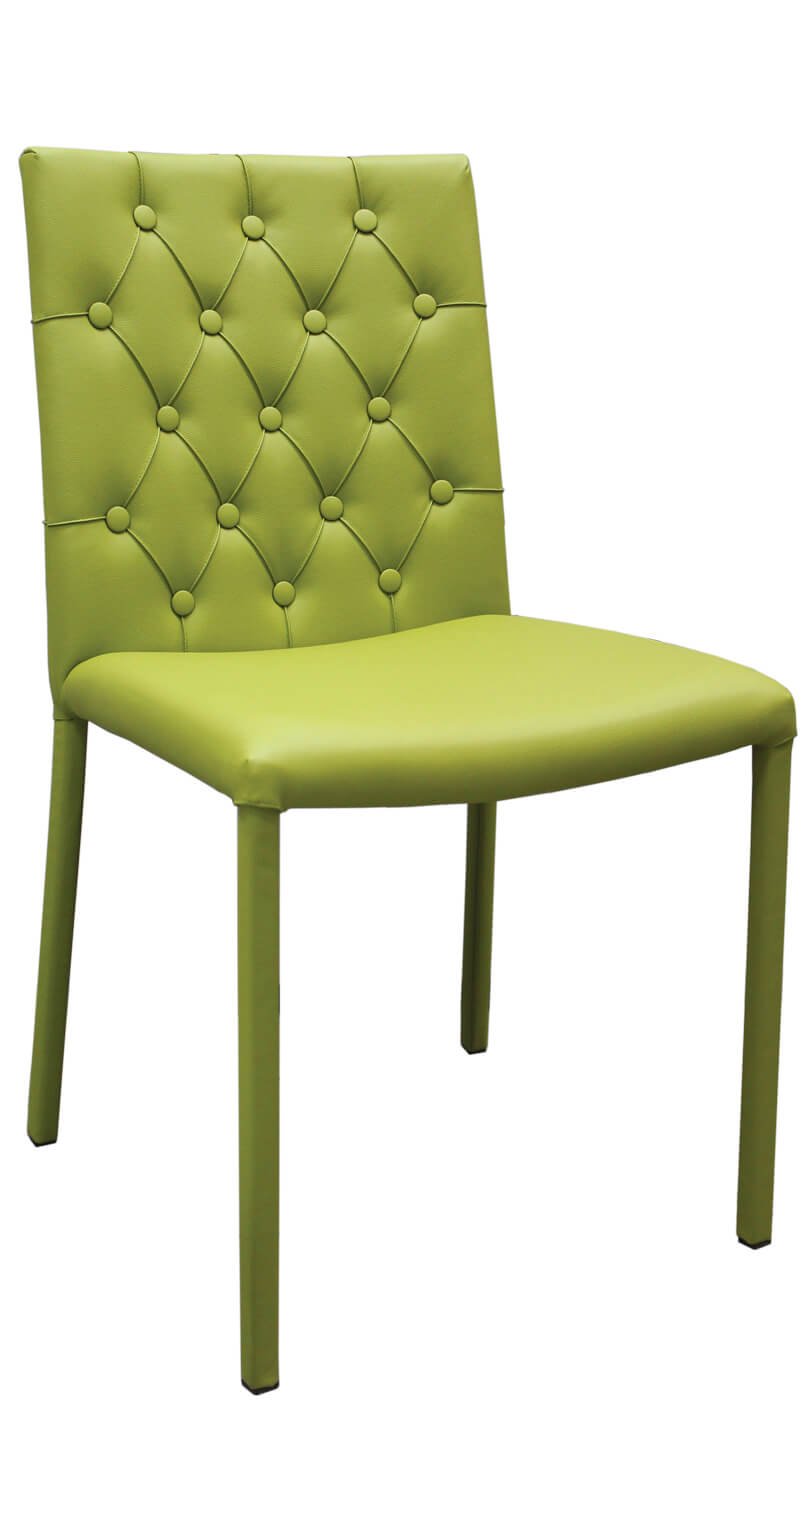 стул кухонный зеленый со спинкой